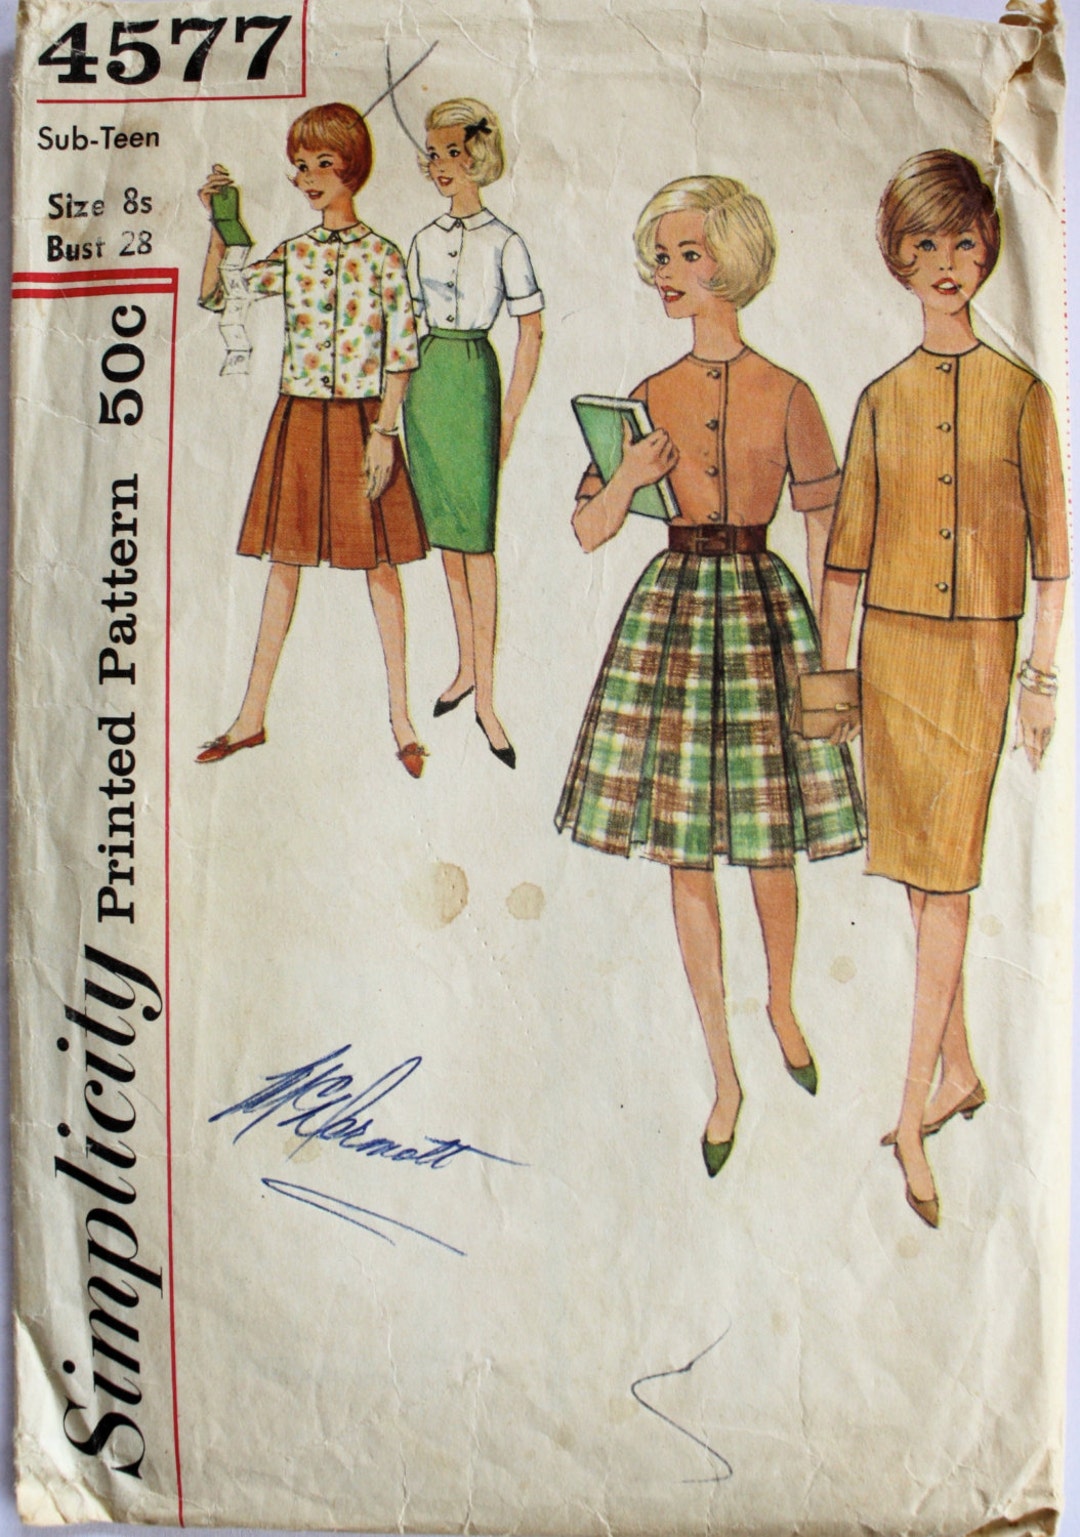 Vintage de 1960 las mujeres falda y blusa costura patrón tamaño 8 busto el  adolescente 28 simplicidad 4577 -  España